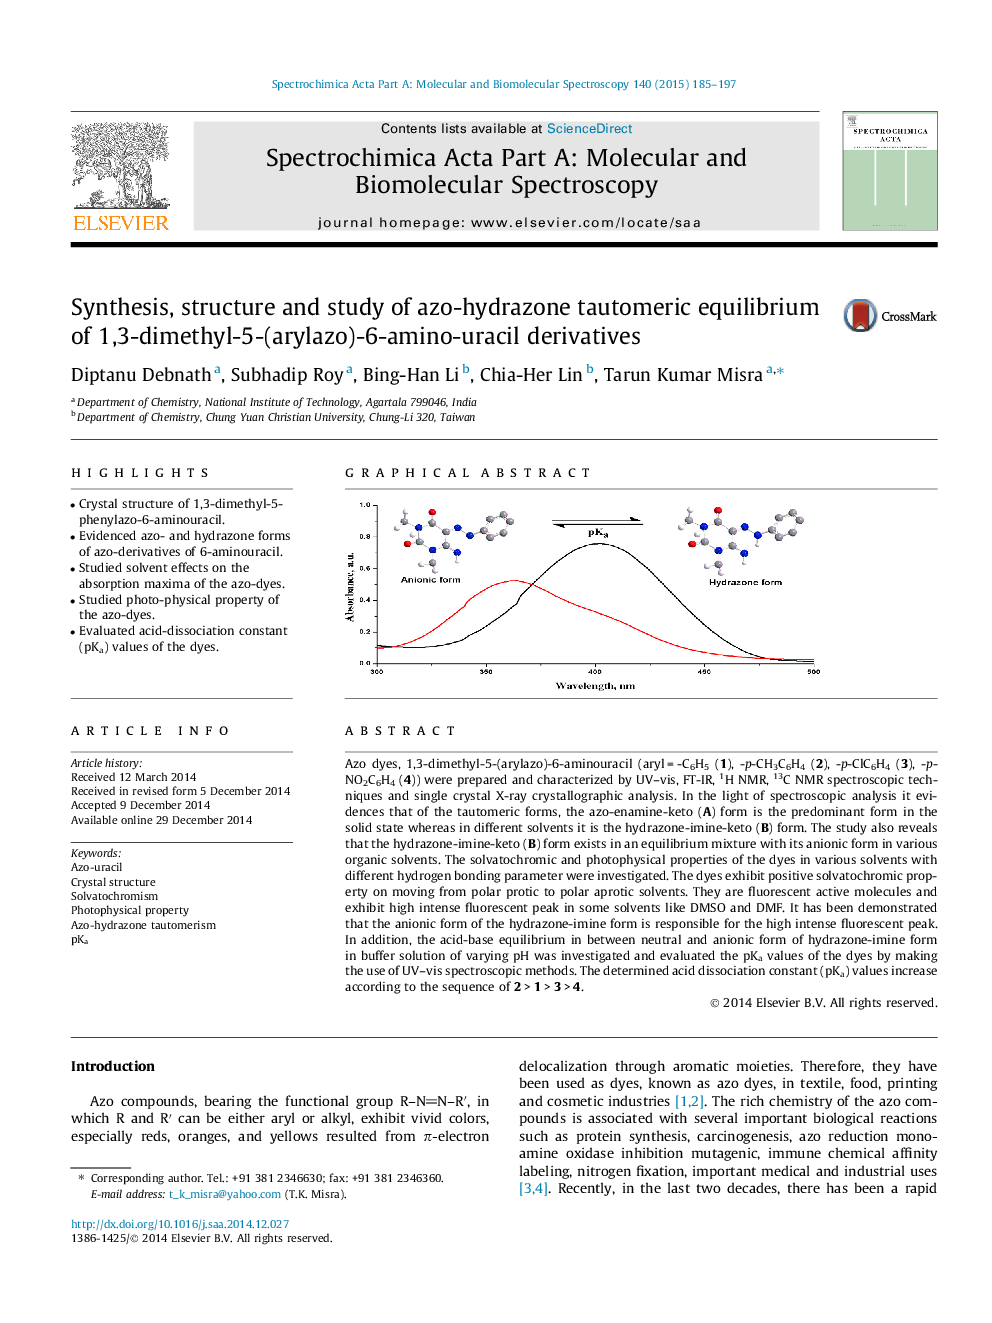 سنتز، ساختار و مطالعه تعادل تودومرز آزو هیدرازن مشتقات 1،3-دی متیل-5- (آریلازو) -6 آمینو اوراسیل 